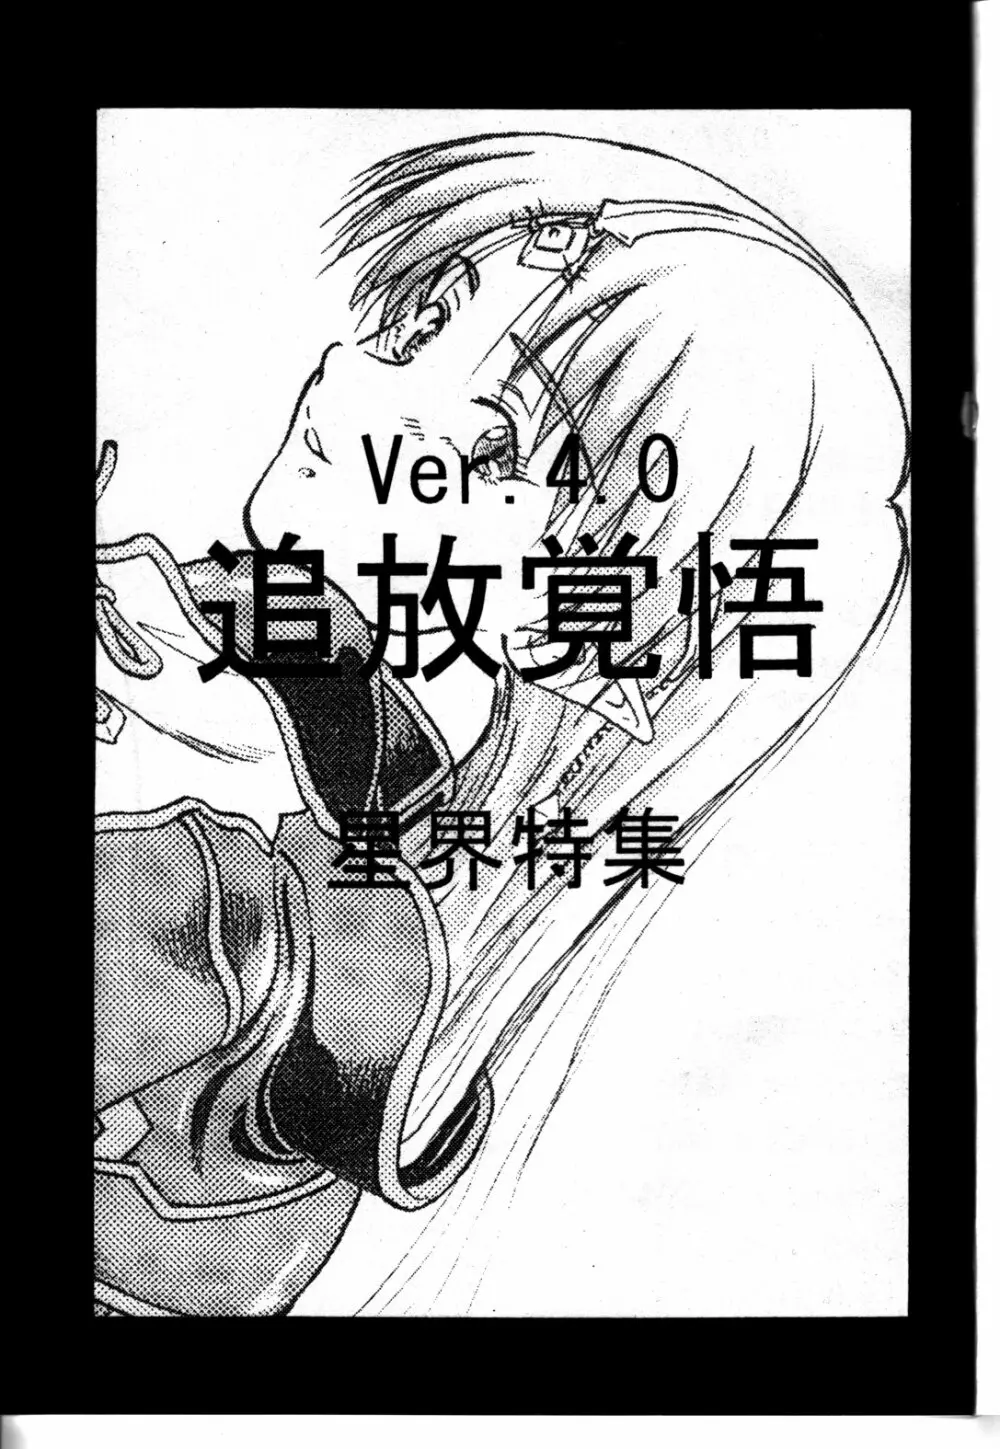 追放覚悟 Ver 4.0 - page3